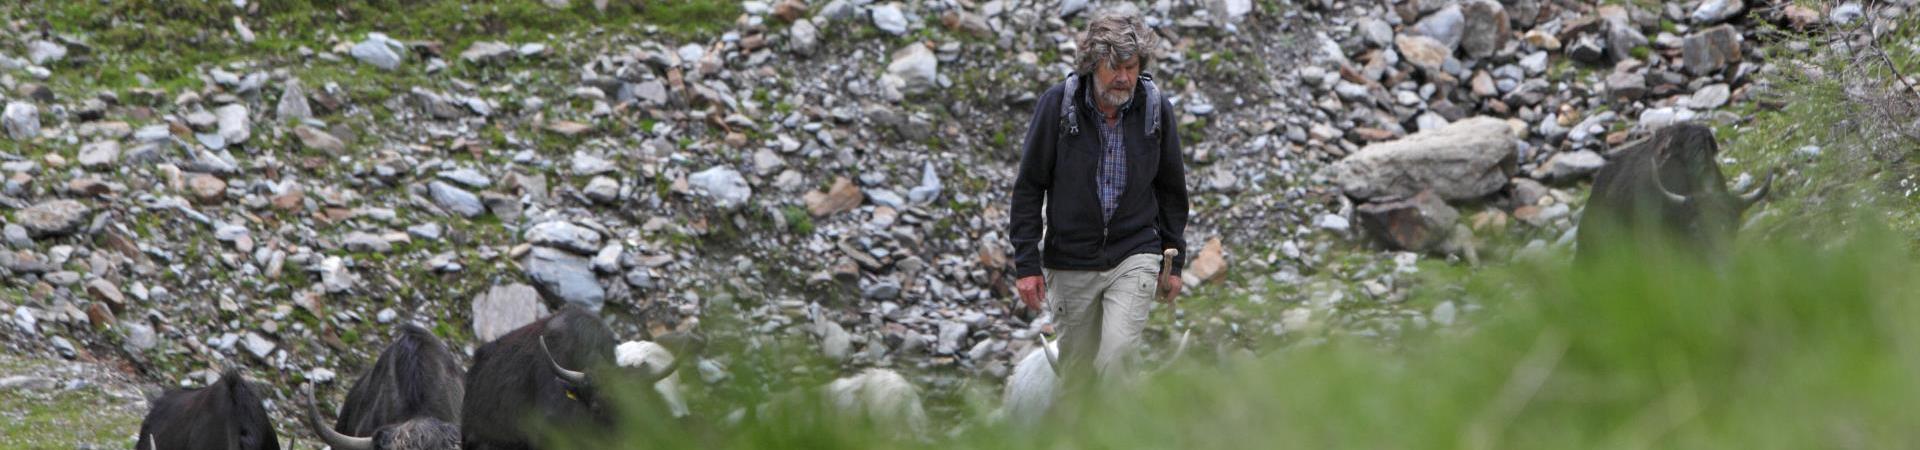 Reinhold Messner & zijn yaks